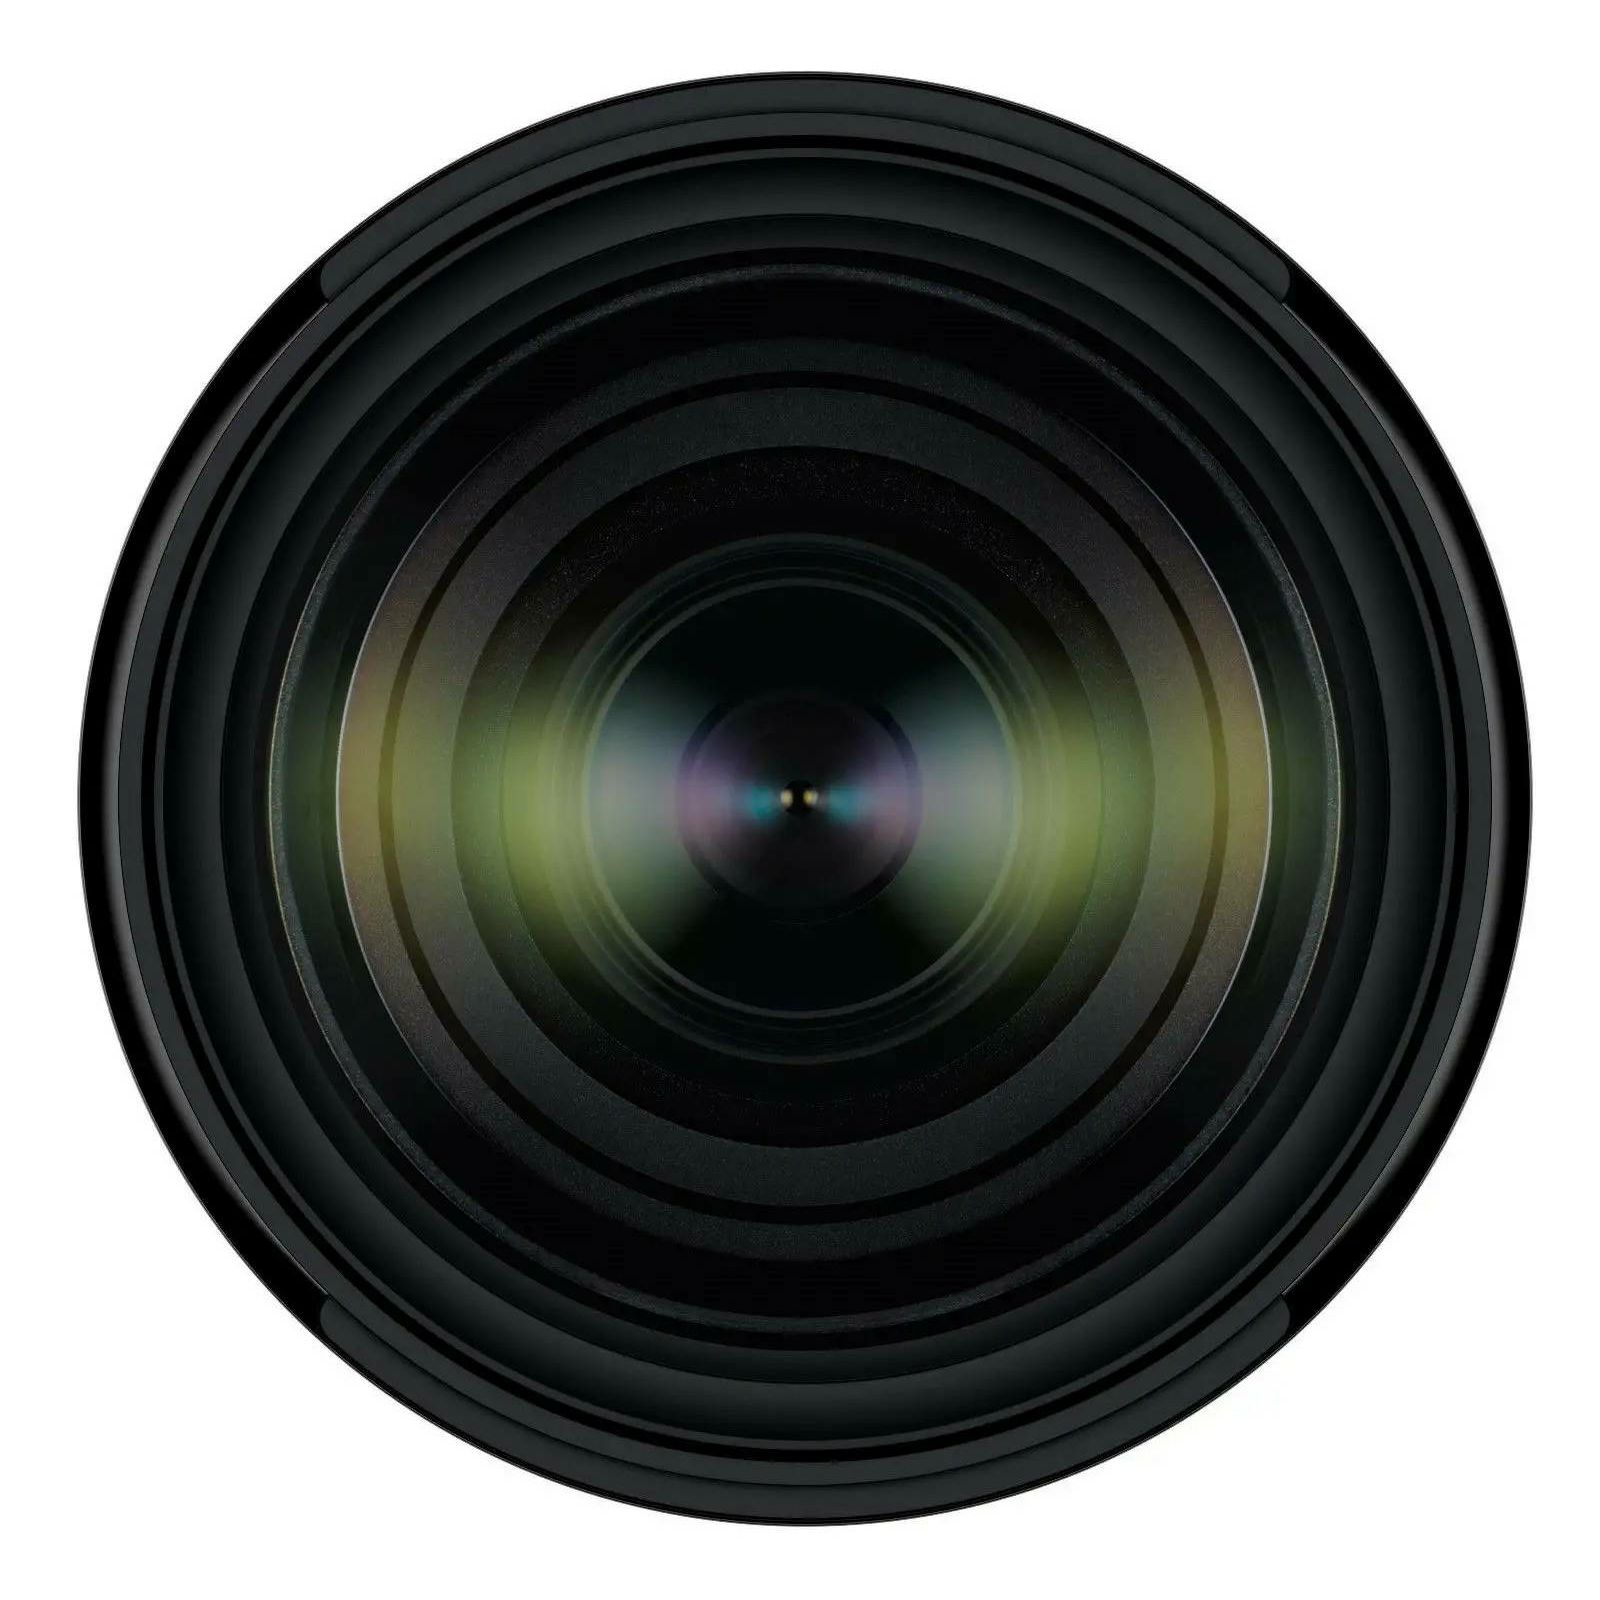 Tamron 28-75mm f/2.8 Di III VXD G2 objektiv za Sony E-mount FE